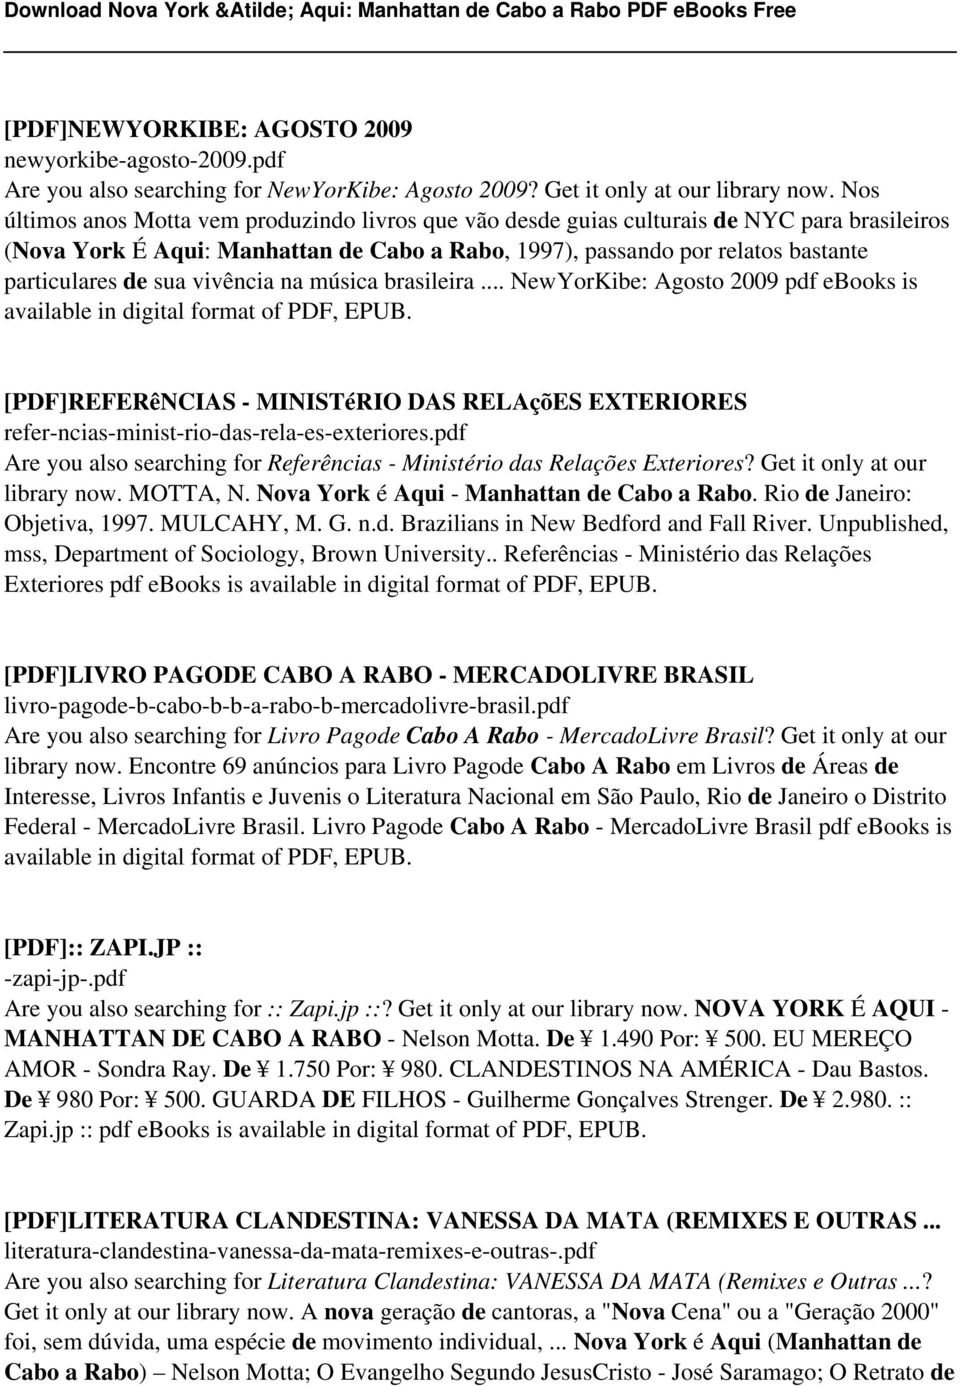 sua vivência na música brasileira... NewYorKibe: Agosto 2009 pdf ebooks is available in digital format of PDF, EPUB.